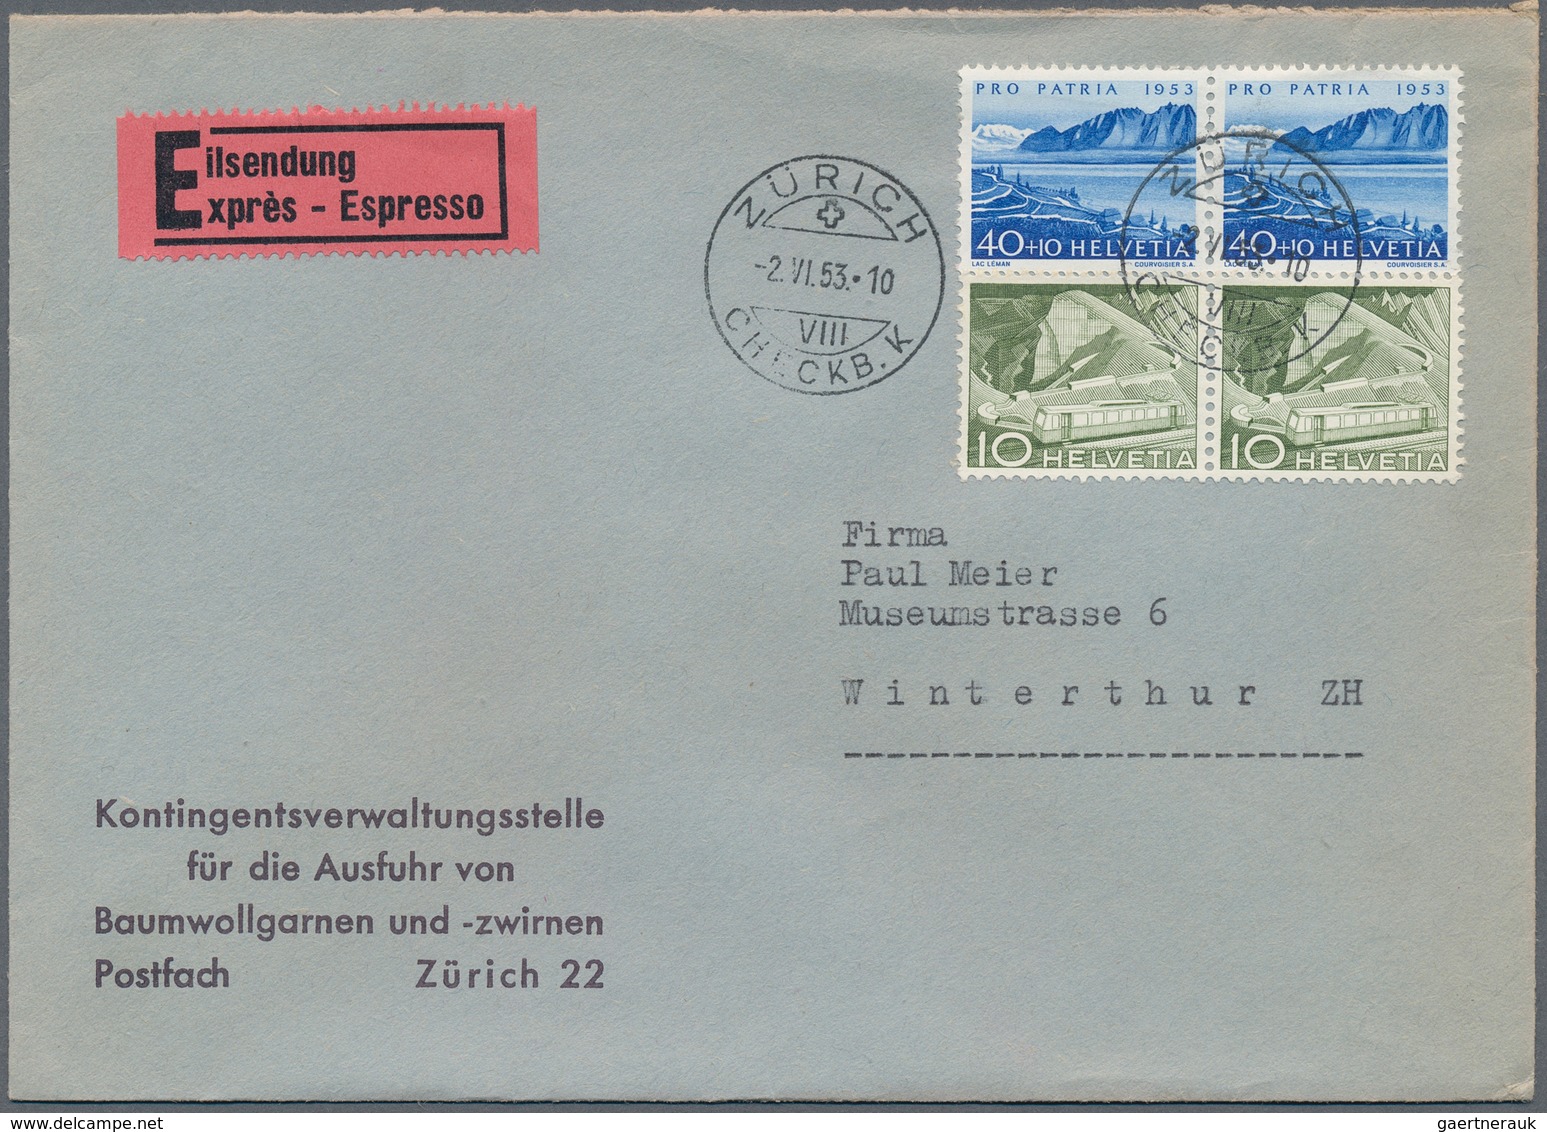 Schweiz: 1936/1970 (ca.) PRO PATRIA, Bestand mit ca. 350 Briefen aus einer Korrespondenz nach Winter